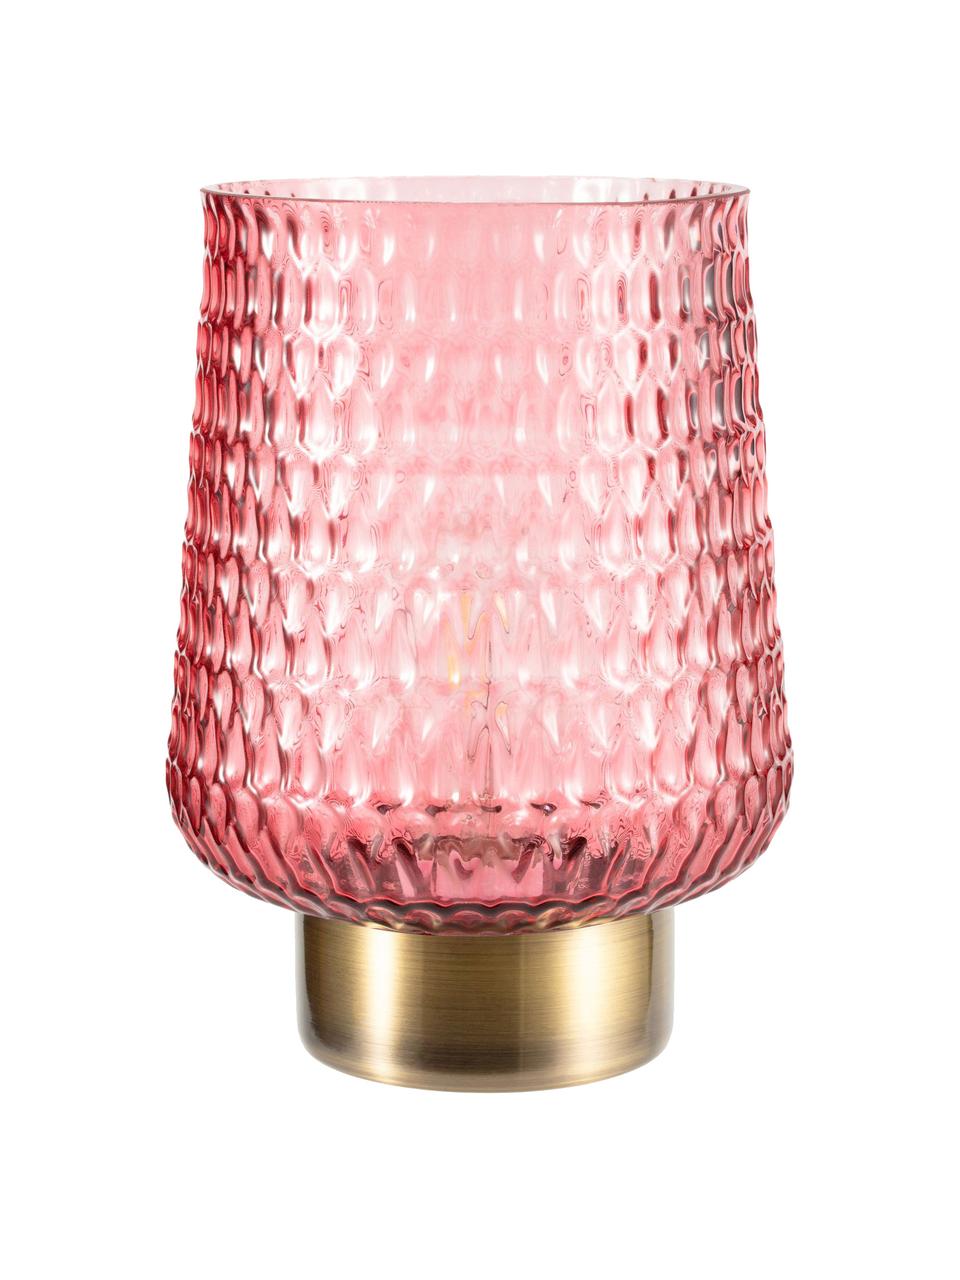 Kleine mobiele LED tafellamp Rose Glamour in roze met timerfunctie, Glas, metaal, Roze, goudkleurig, Ø 16 x H 21 cm